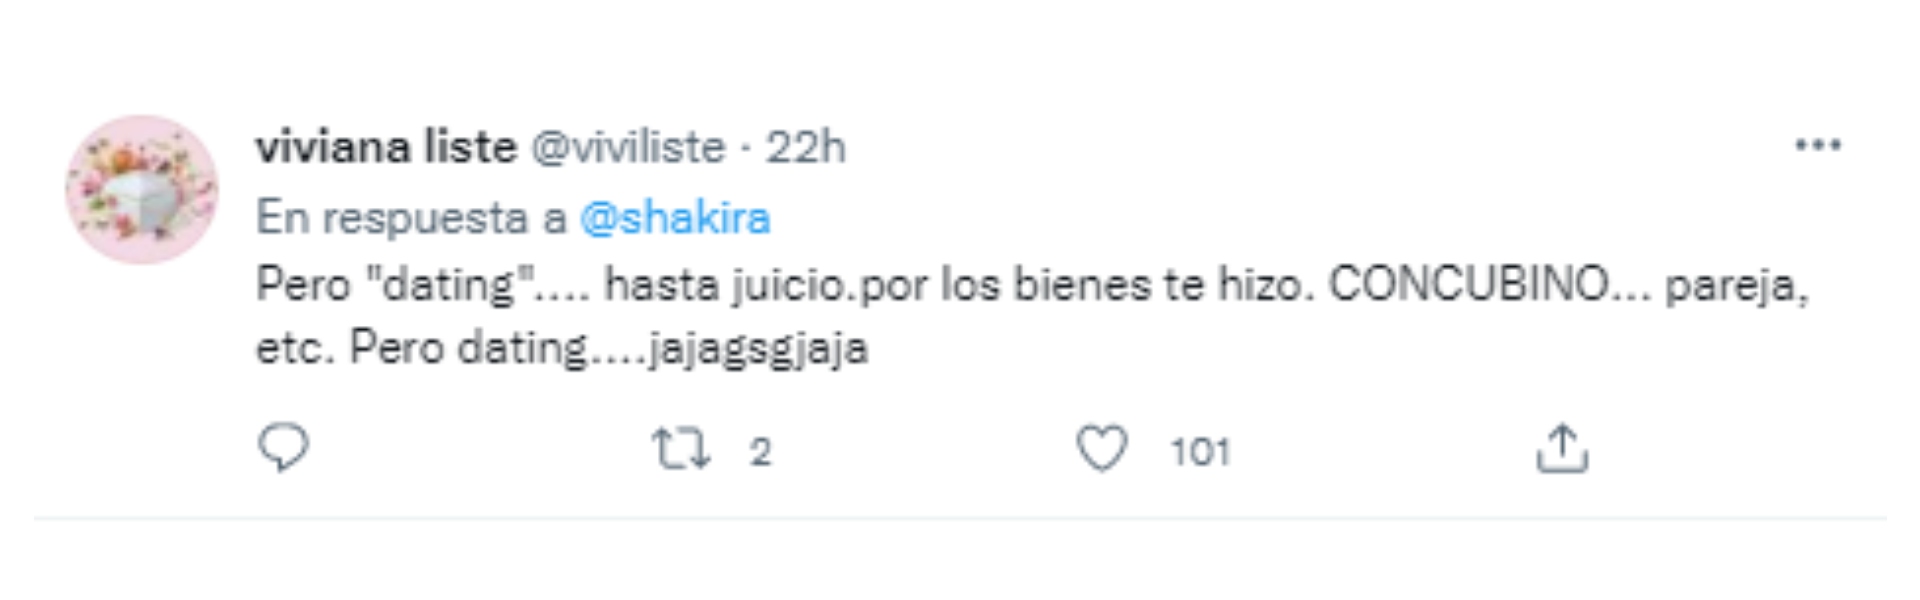 Los comentarios que recibió Shakira luego de su tweet sobre Antonio De la Rúa